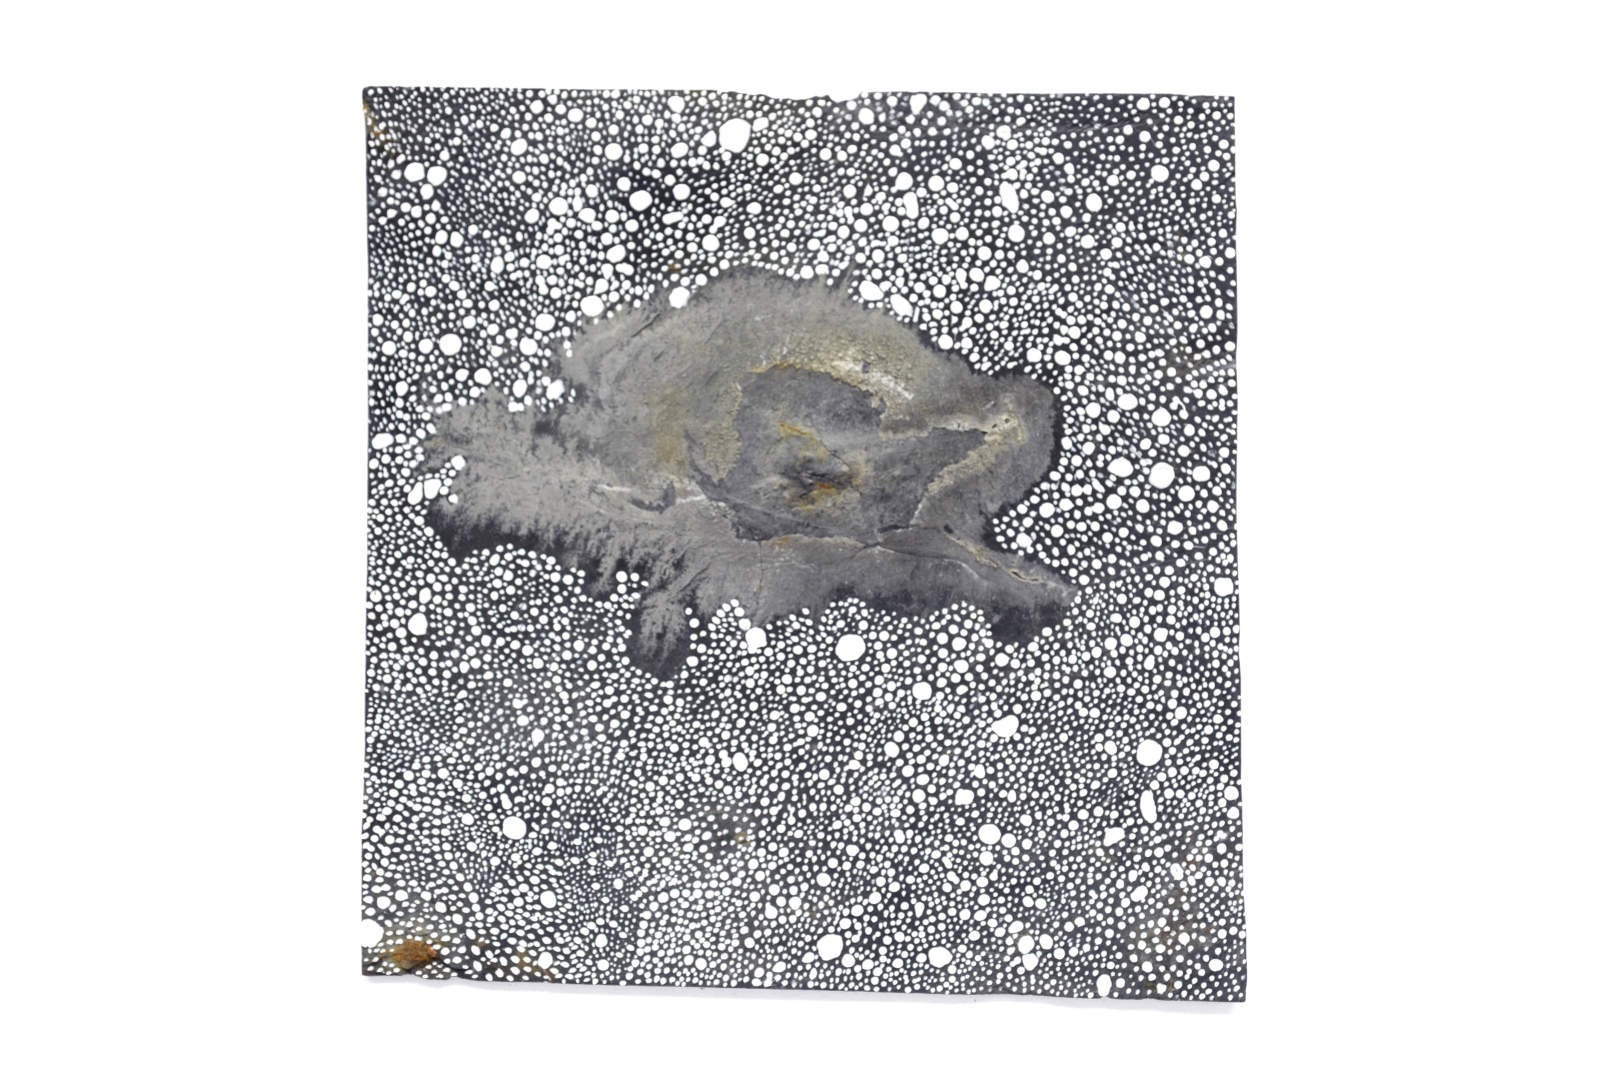 Jeu de matière entre la peinture et son support ardoise évoquant la neige et une île - Par Sylvie Hénot Artiste contemporaine